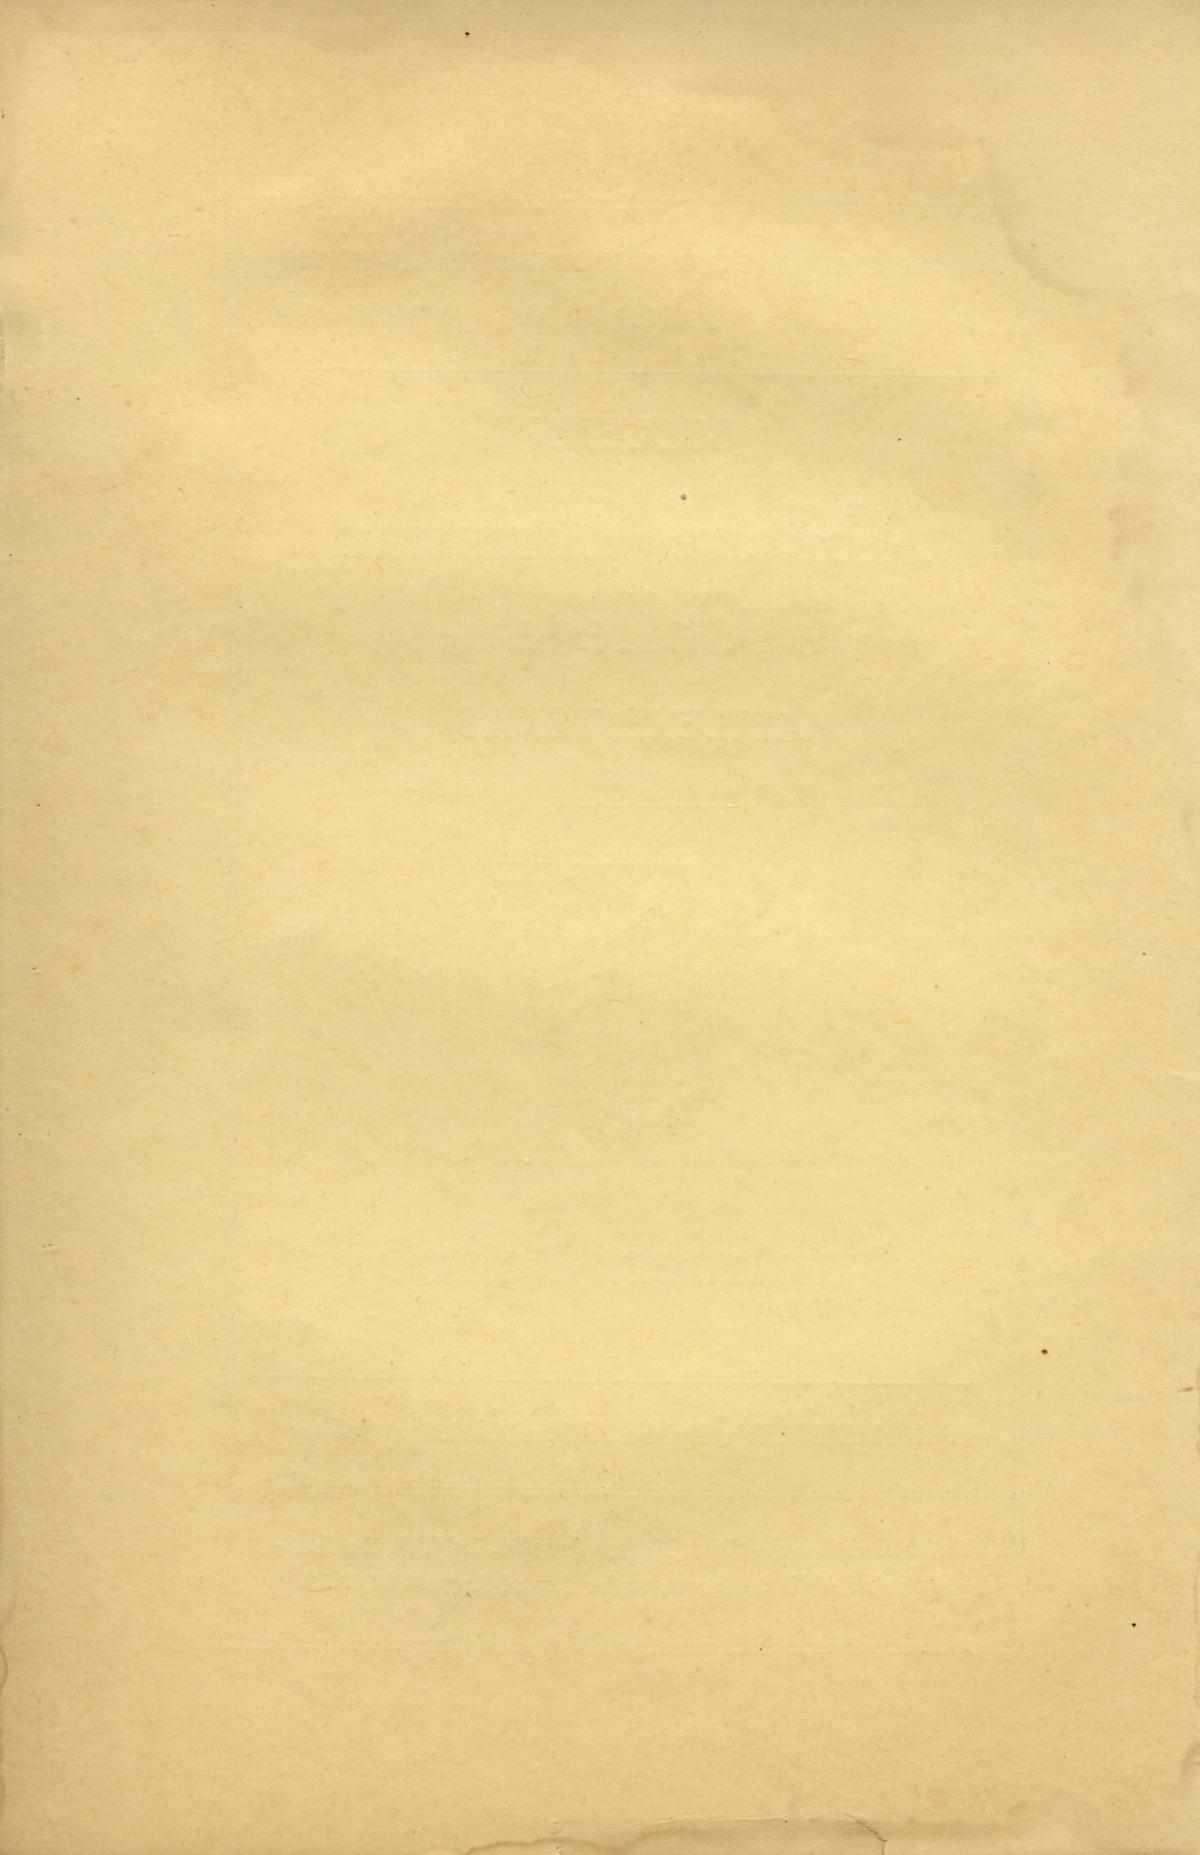 Catalog of Abilene Christian College, 1927
                                                
                                                    Front Inside
                                                